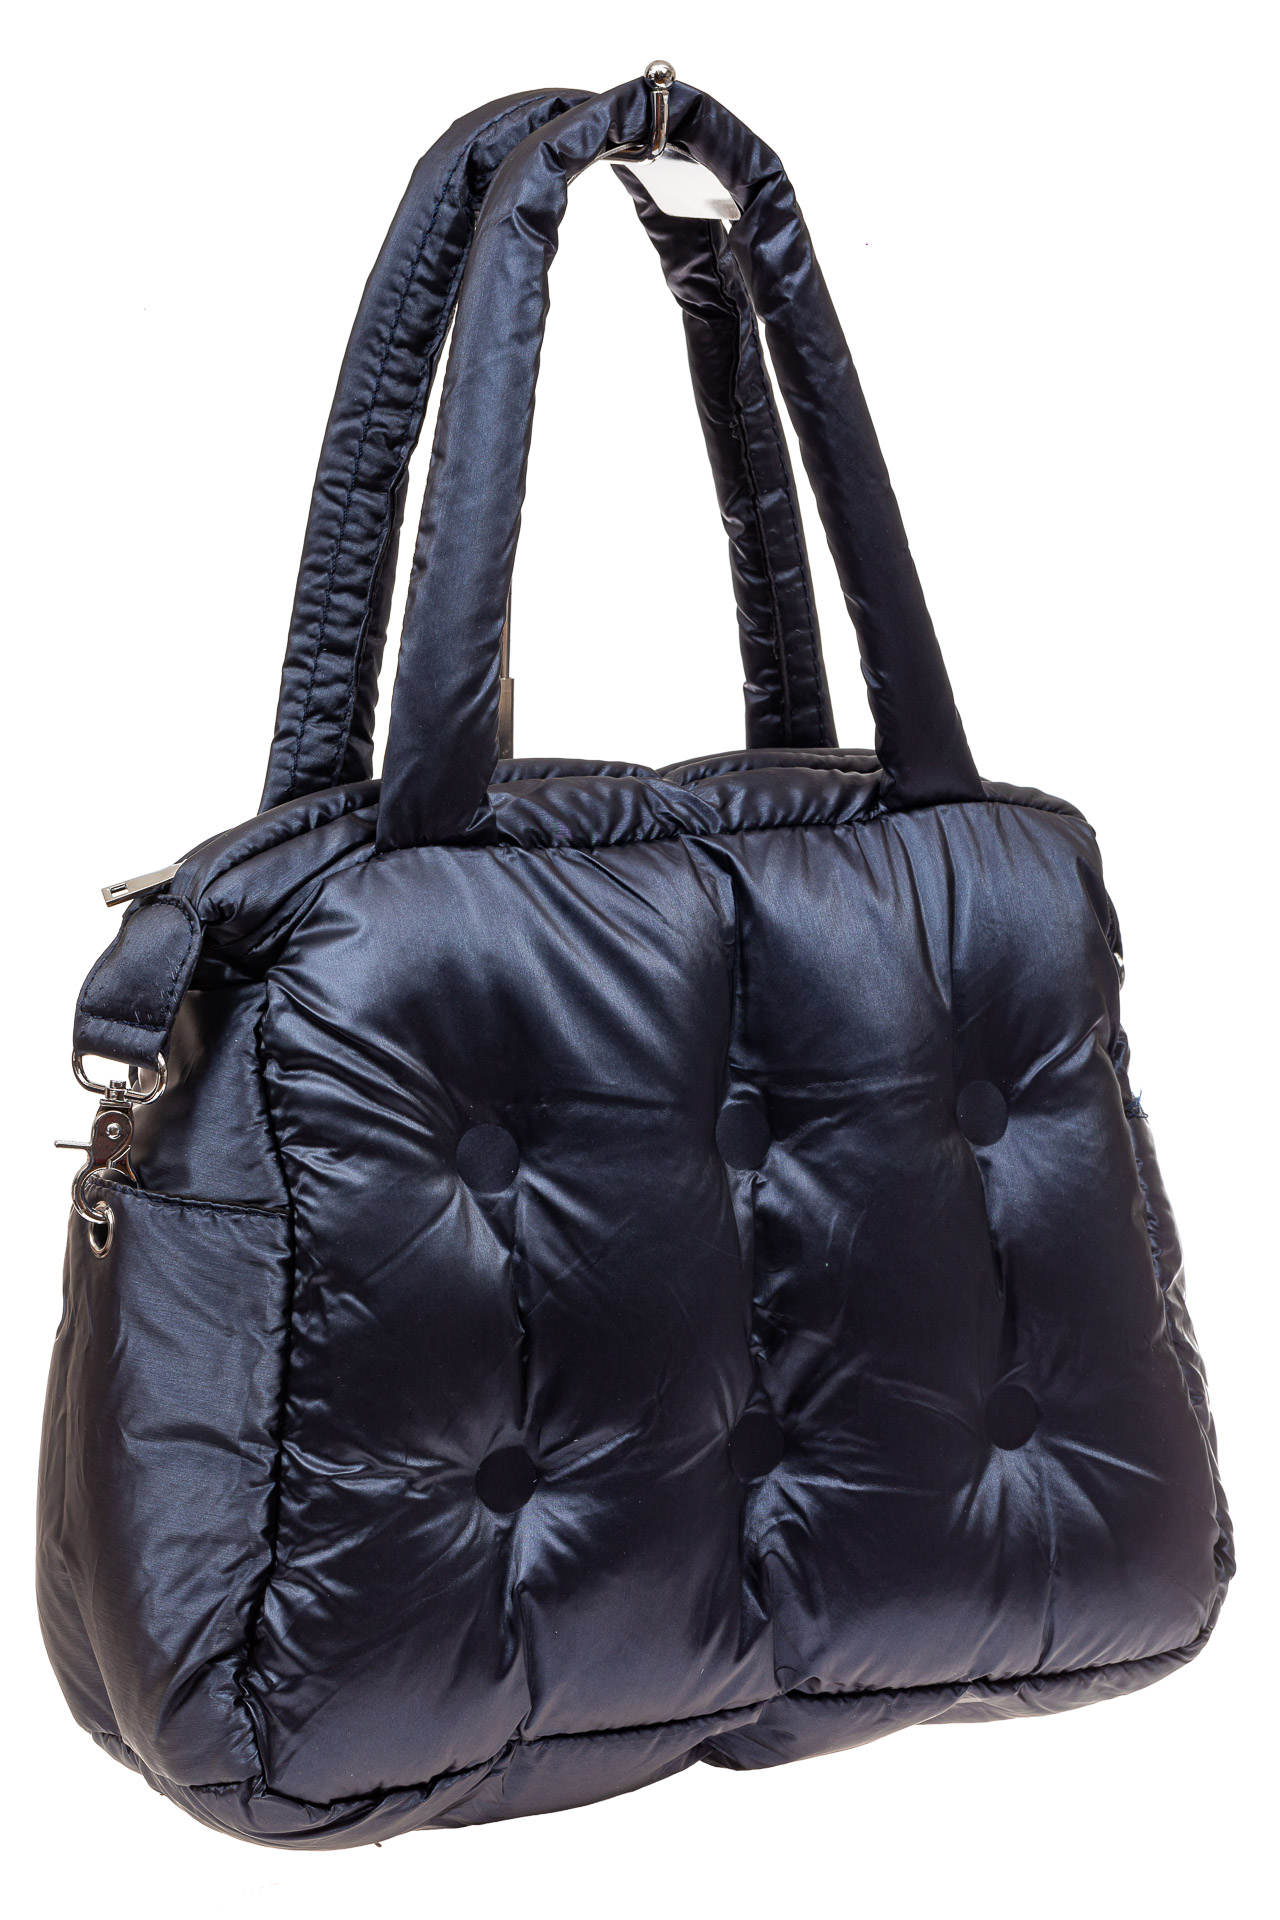 фото сумок каркасных женских цвет черный стеганая